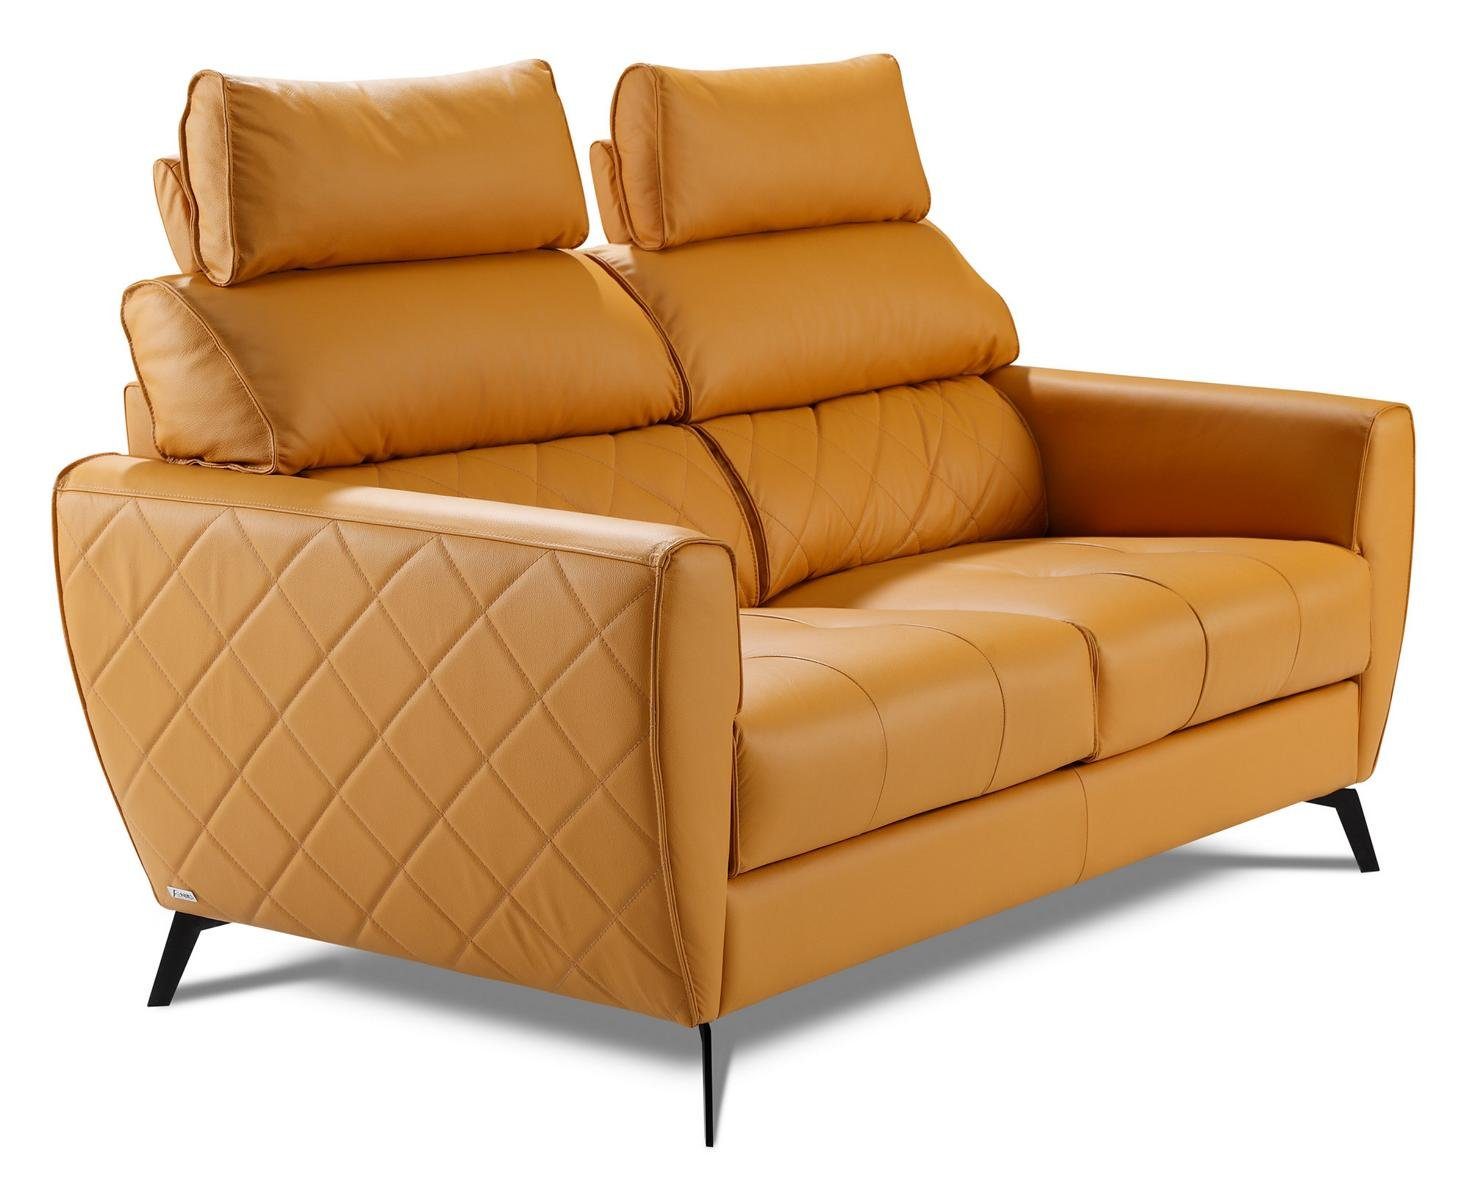 JVmoebel Wohnzimmer-Set, Leder Design Couch Polster Sitz 2+1 Garnituren Kunstleder Garnitur Gelb